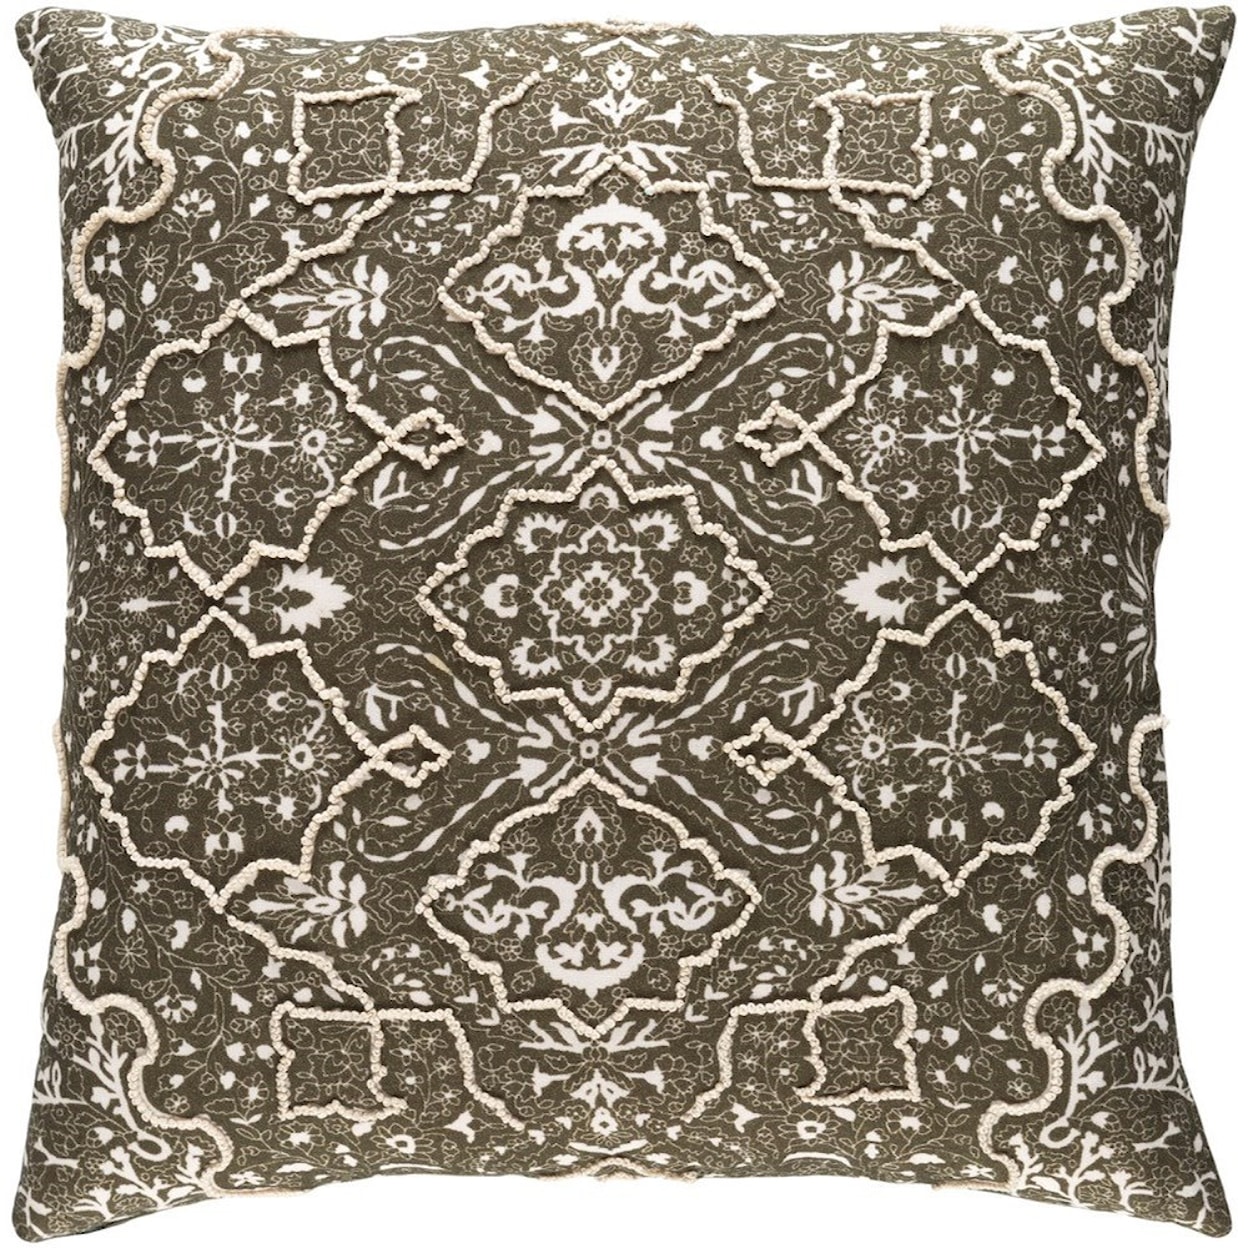 Surya Batik 22 x 22 x 5 Down Pillow Kit